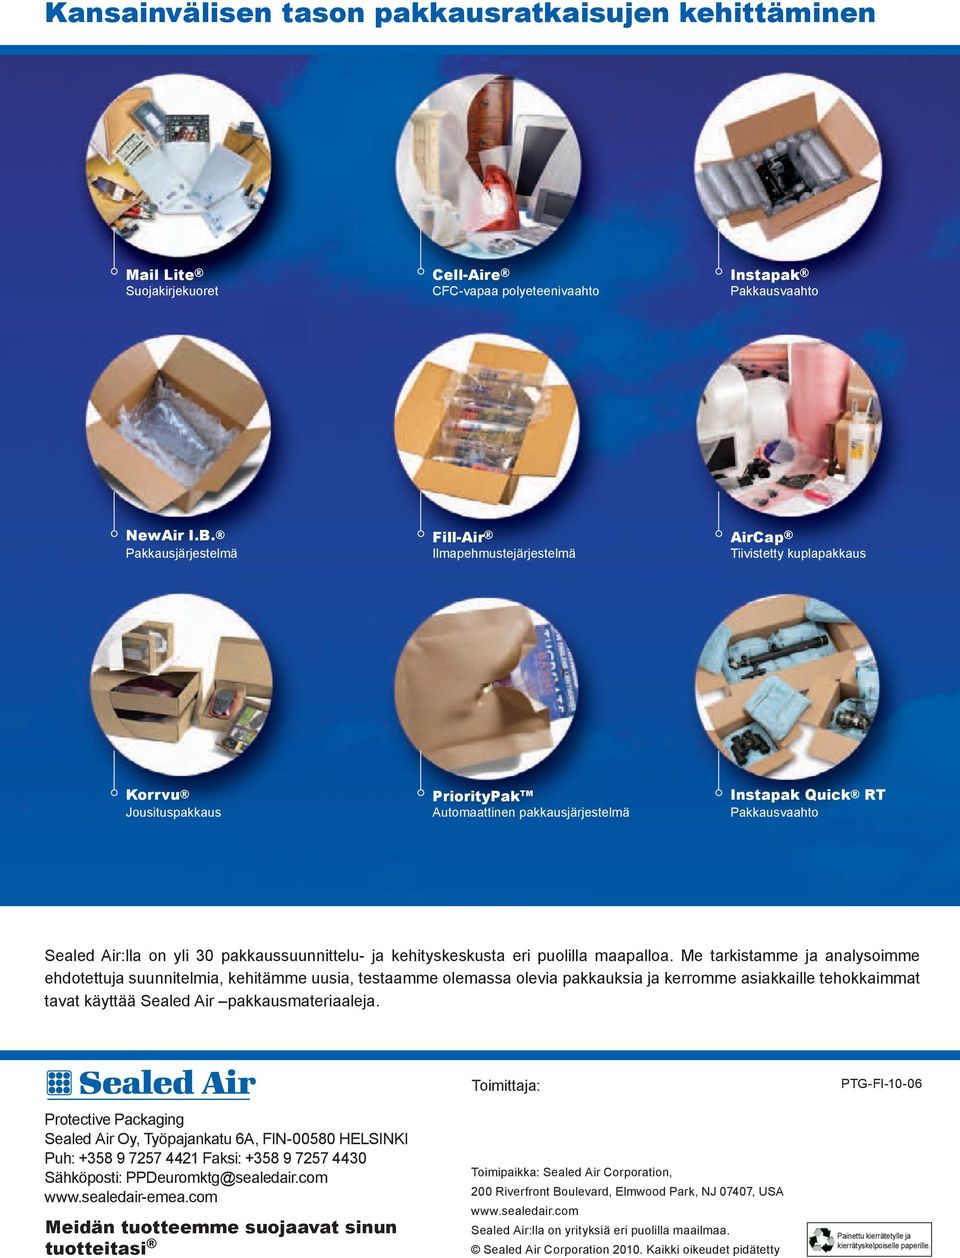 Air:lla on yli 30 pakkaussuunnittelu- ja kehityskeskusta eri puolilla maapalloa.